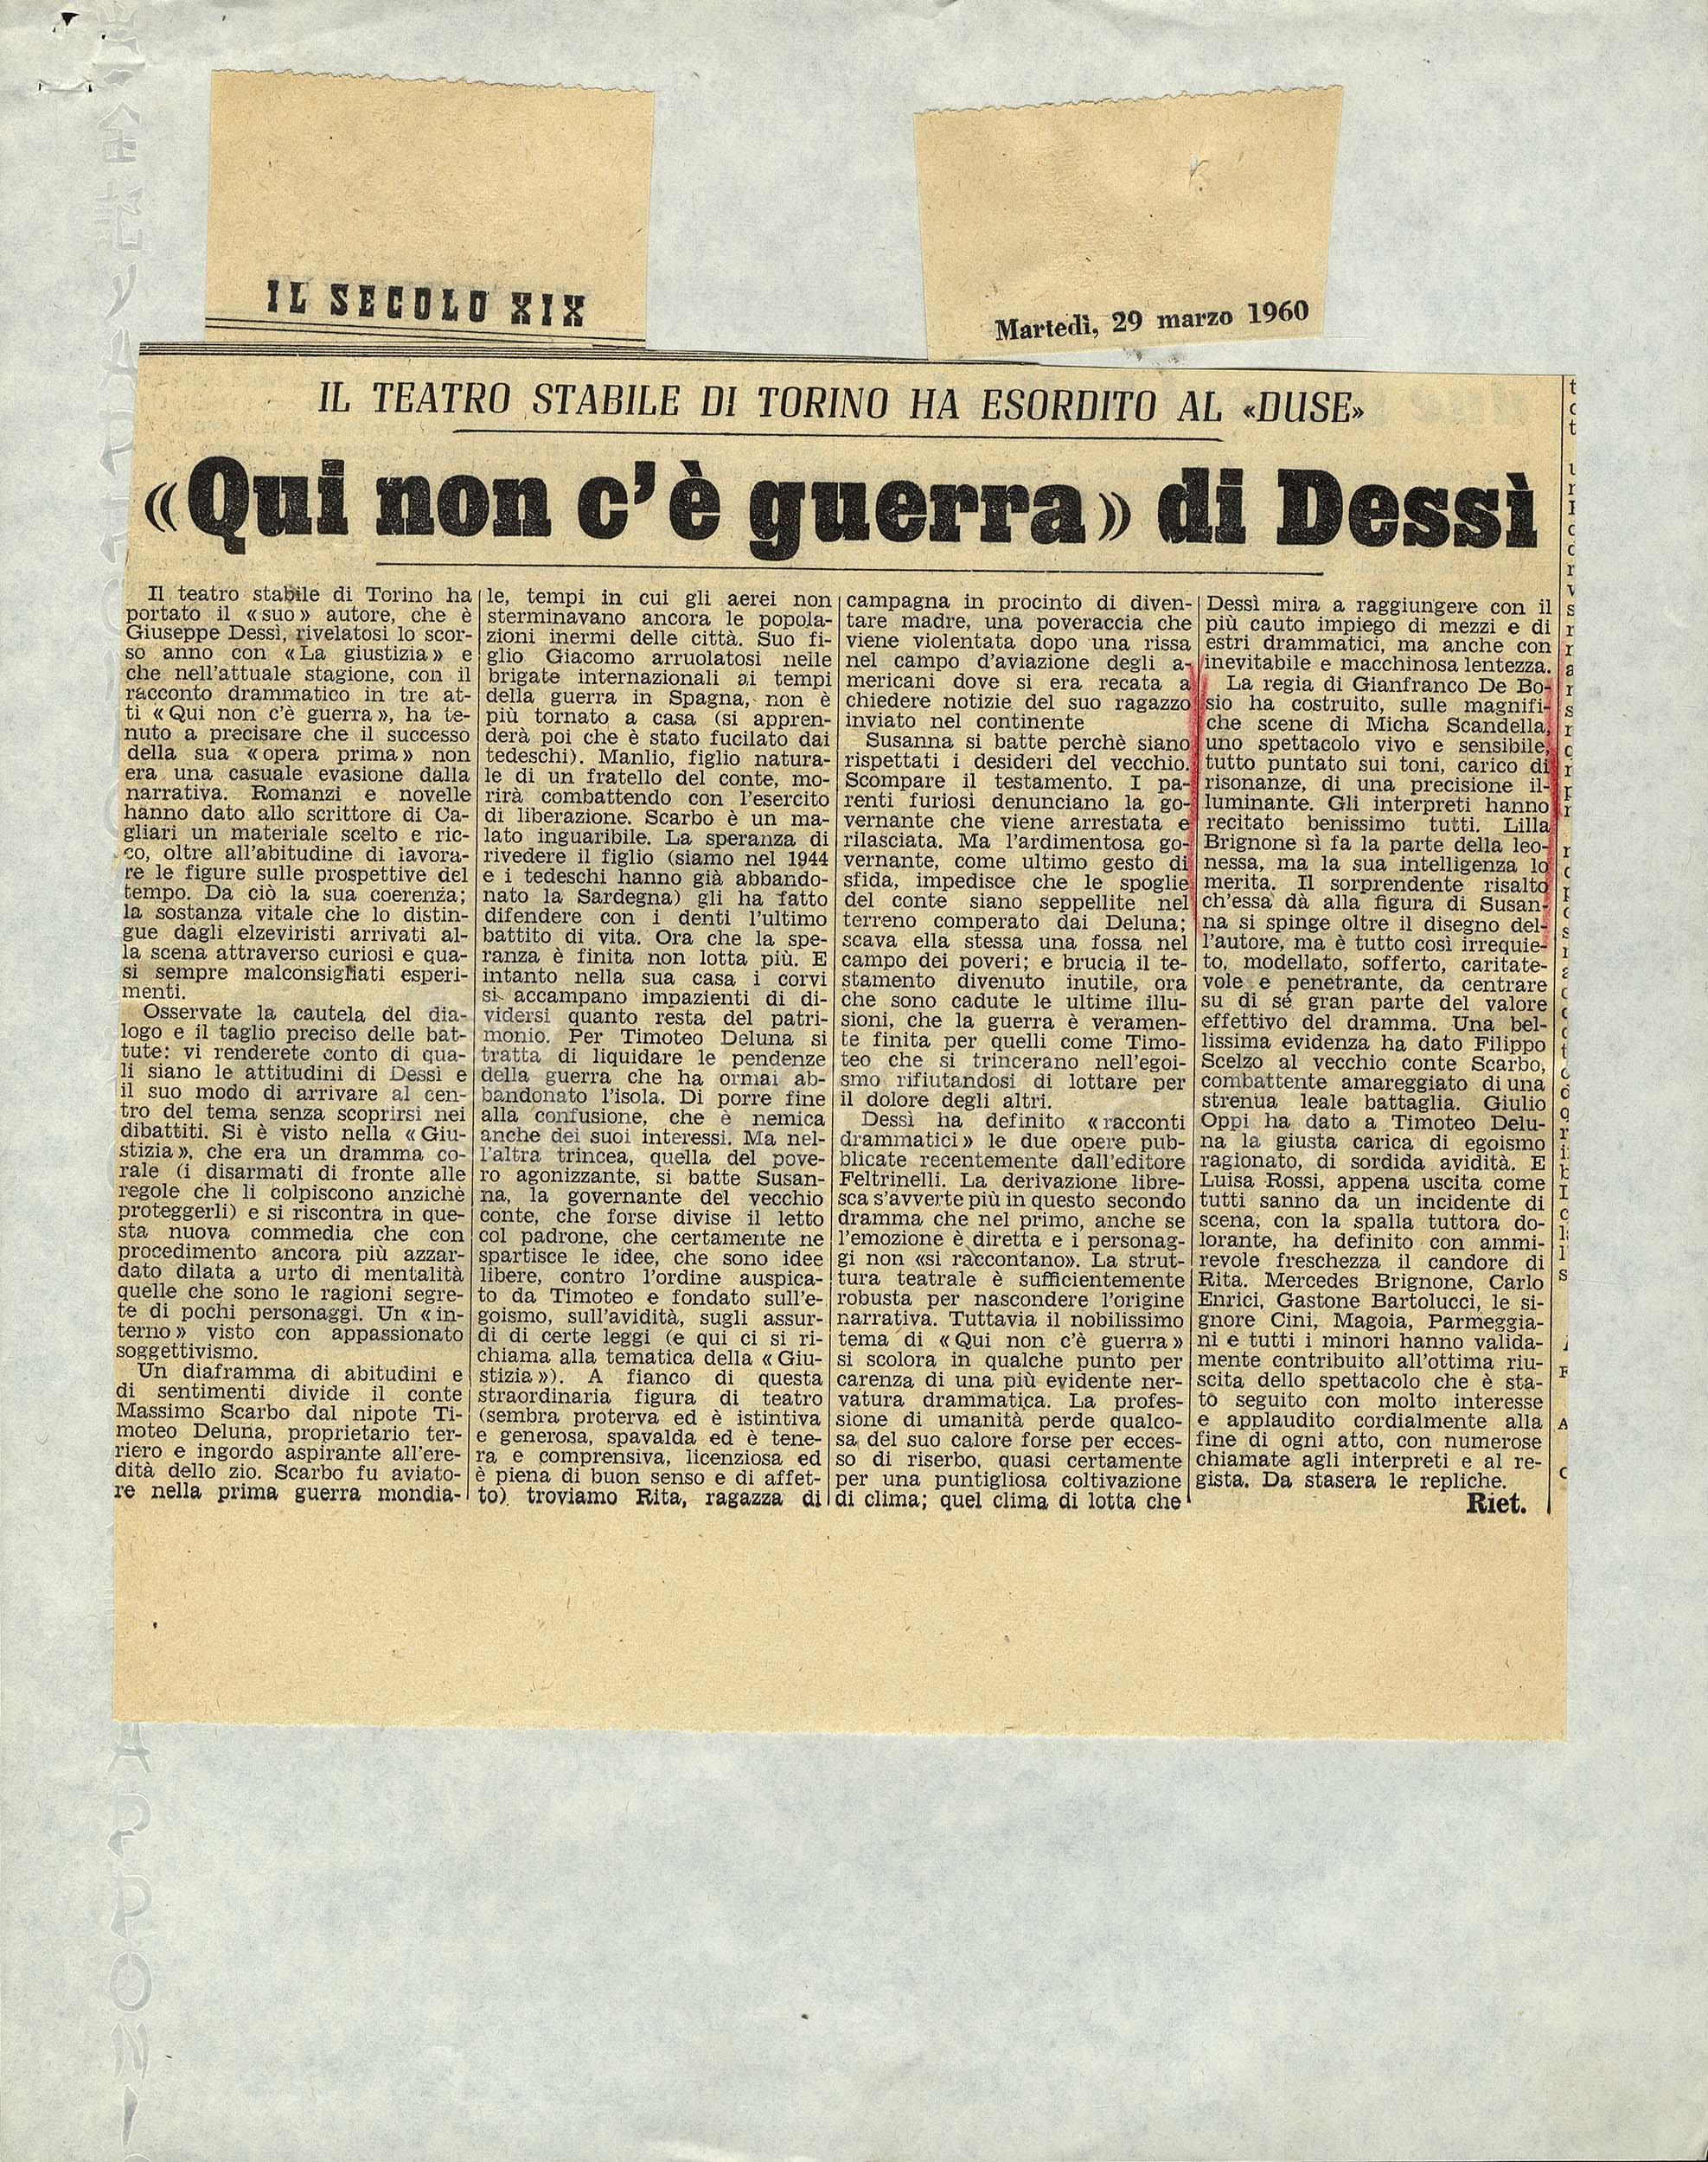  «Qui non c'è guerra» di Dessì 29 marzo 1960